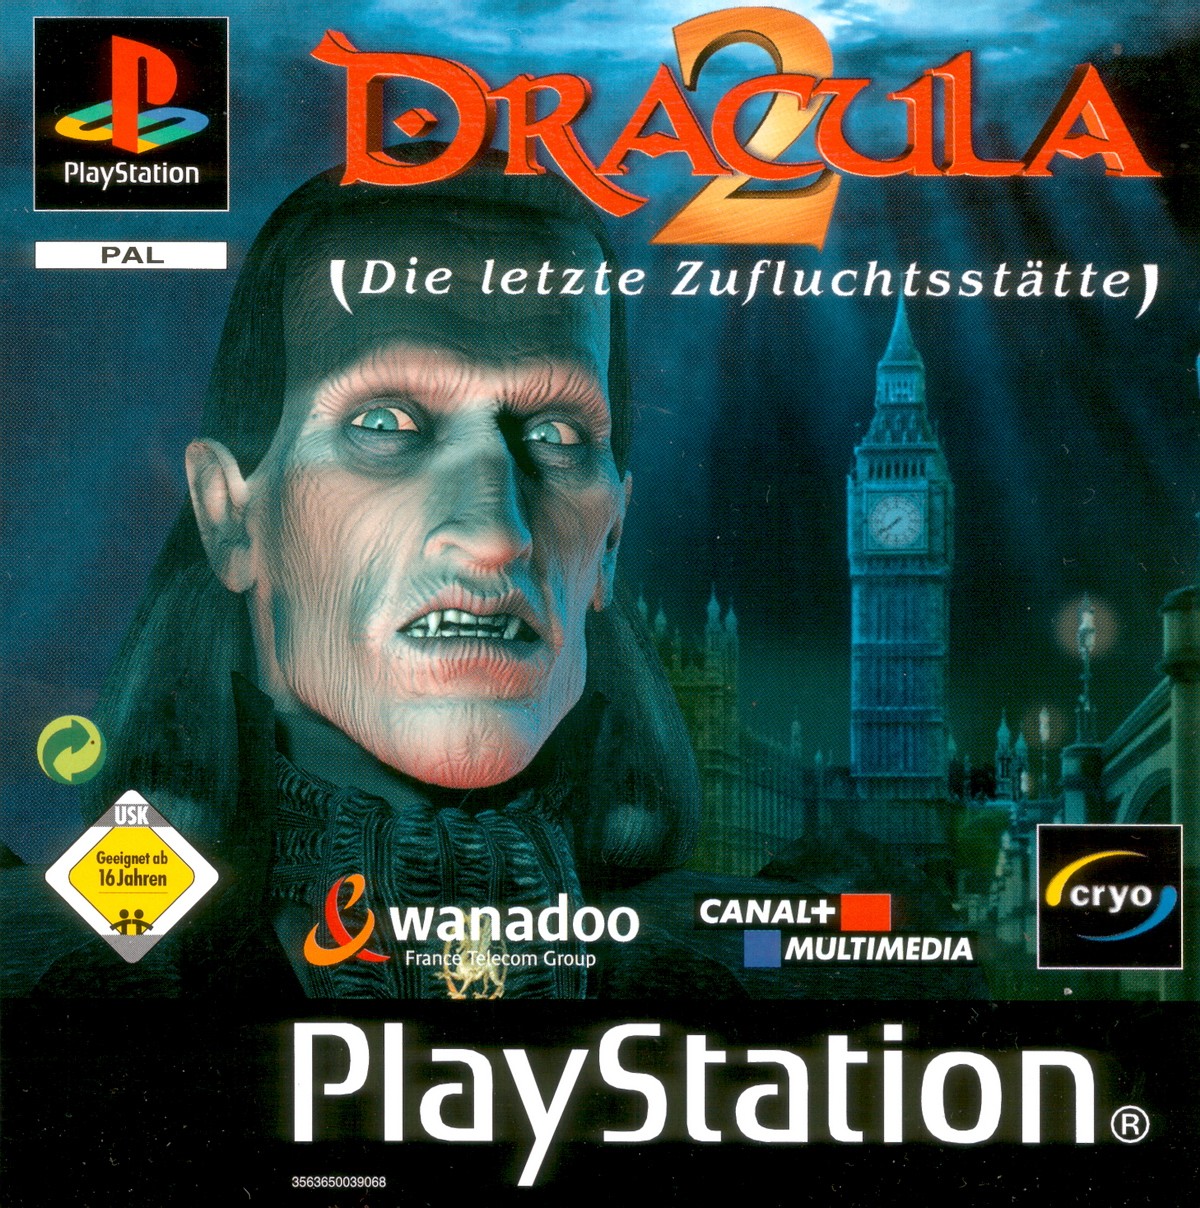 Dracula last